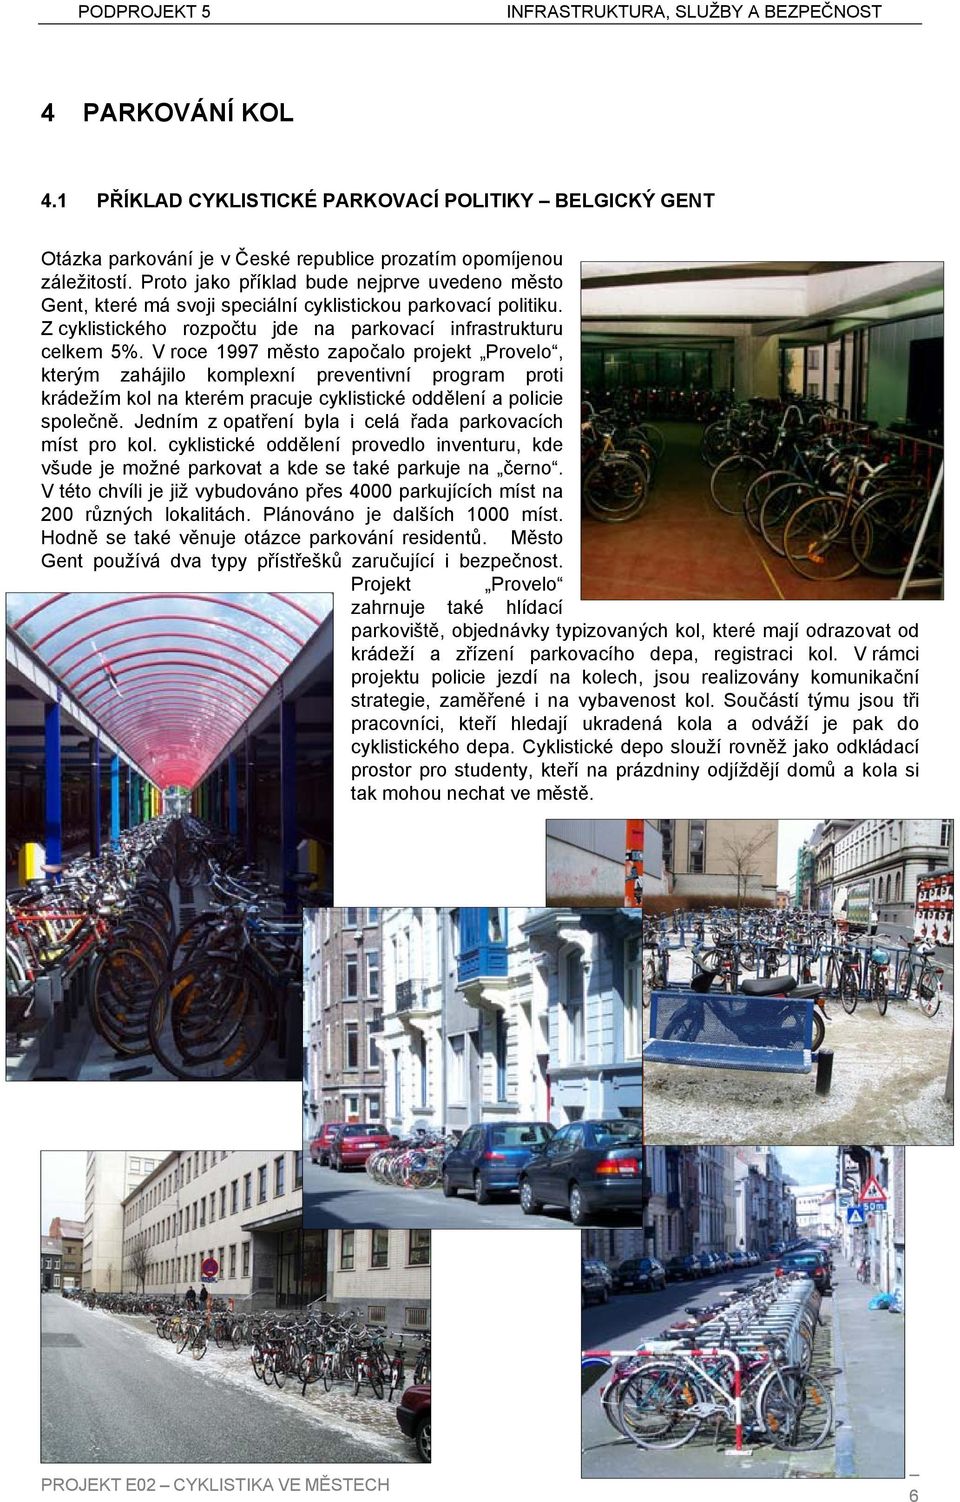 V roce 1997 město započalo projekt Provelo, kterým zahájilo komplexní preventivní program proti krádežím kol na kterém pracuje cyklistické oddělení a policie společně.